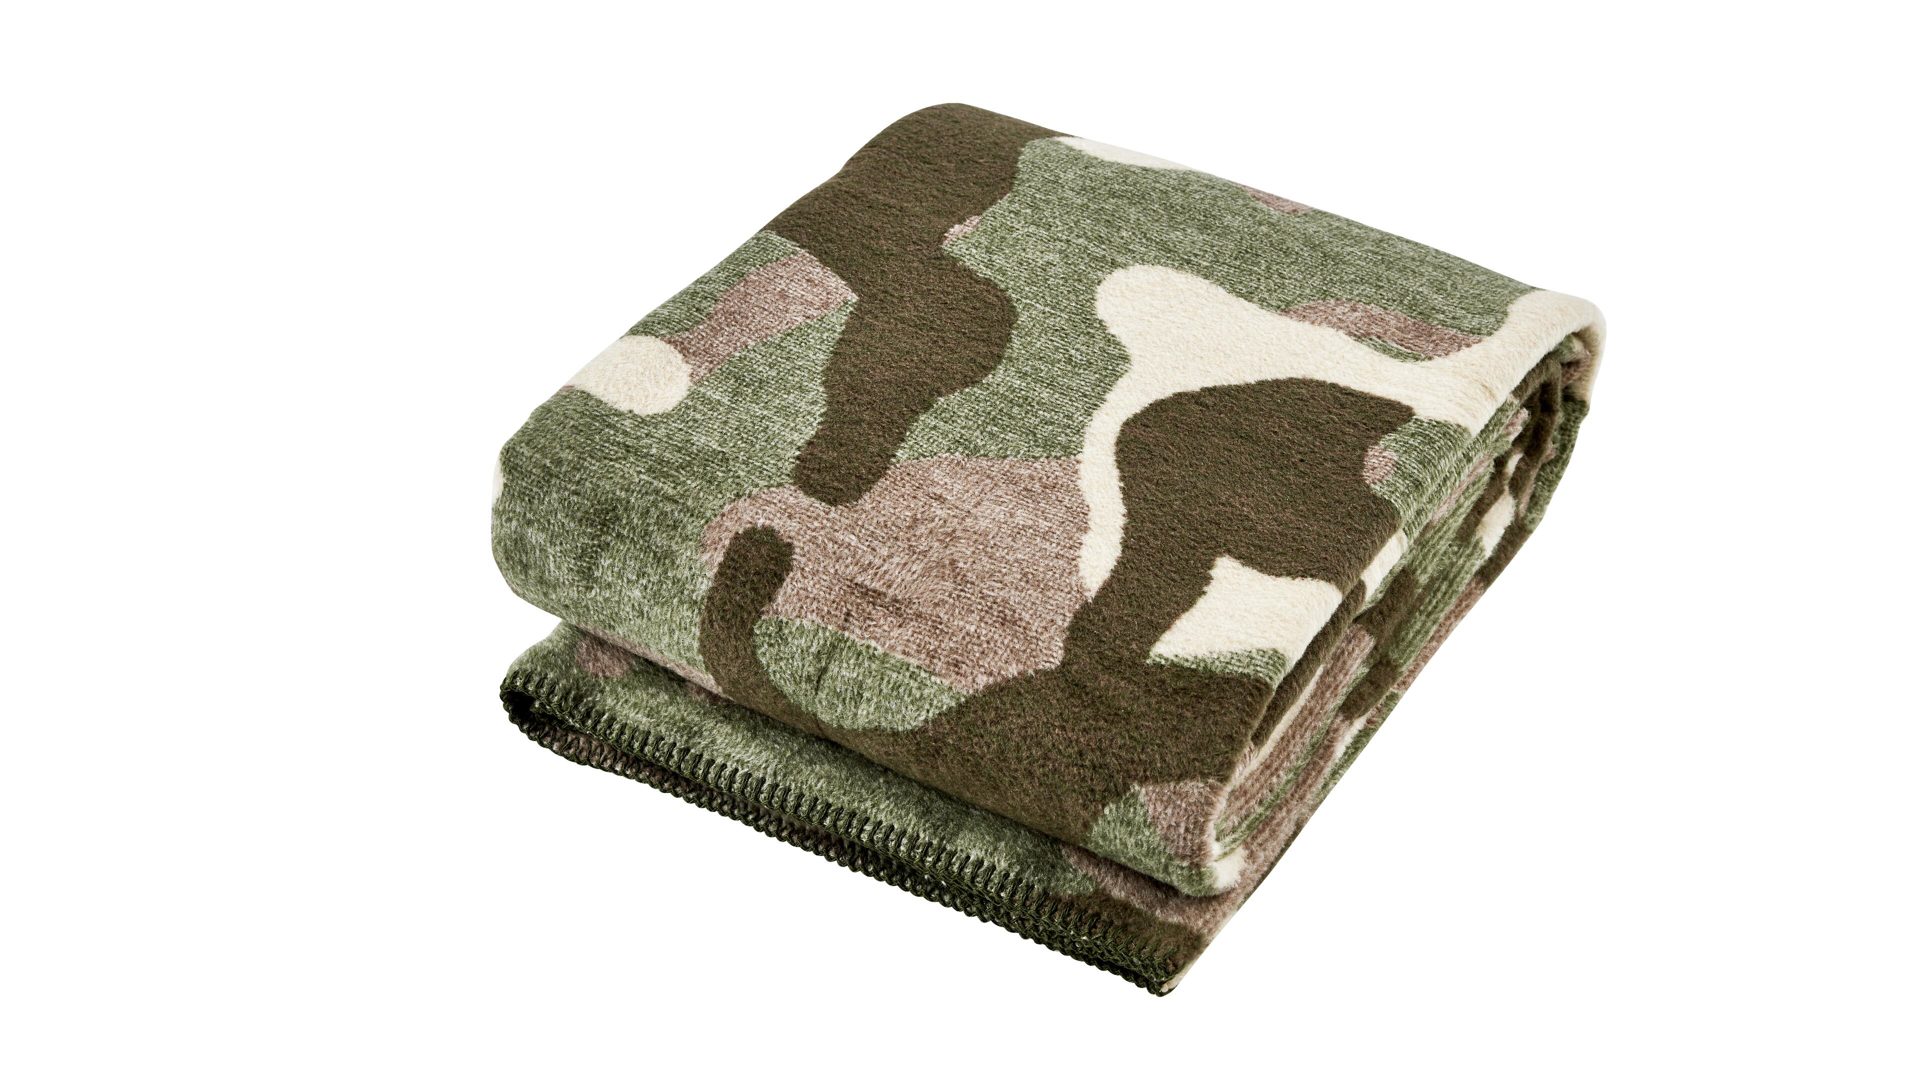 Wohndecke Done® be different aus Stoff in Braun DONE® Wohndecke Blanket Camouflage braunes Camouflagemuster – ca. 150 x 200 cm